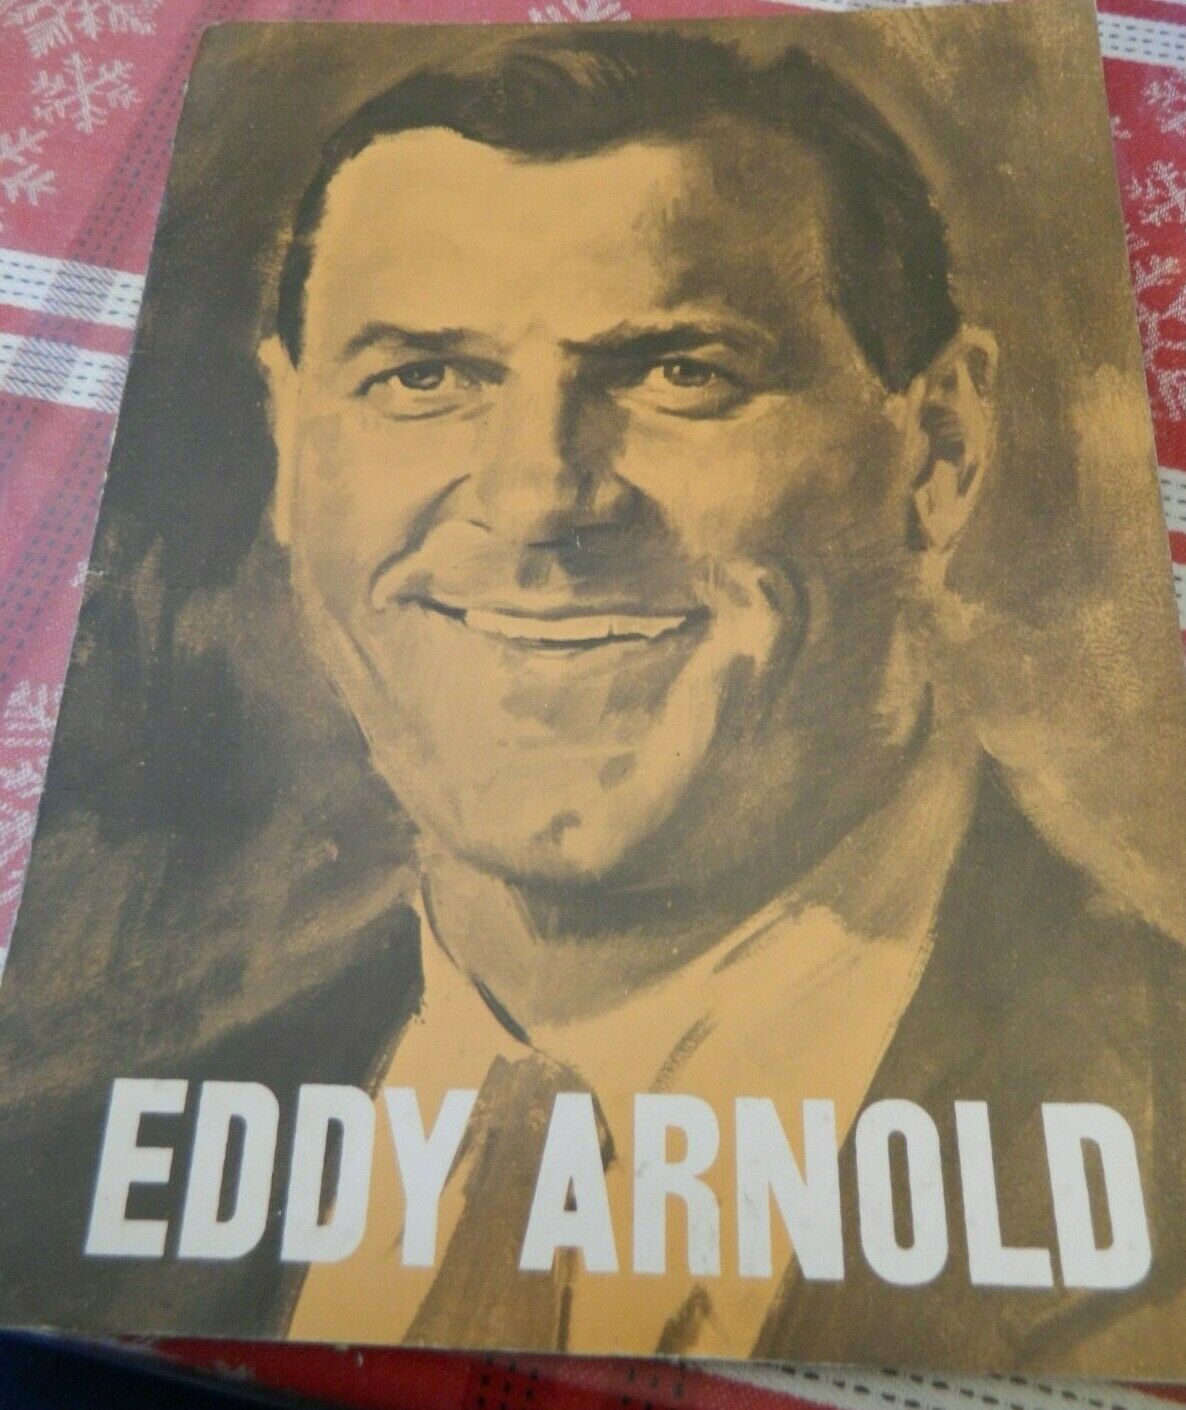 1960's Vintage Eddy Arnold Souvenir Program Concert Tour Book Photo Album